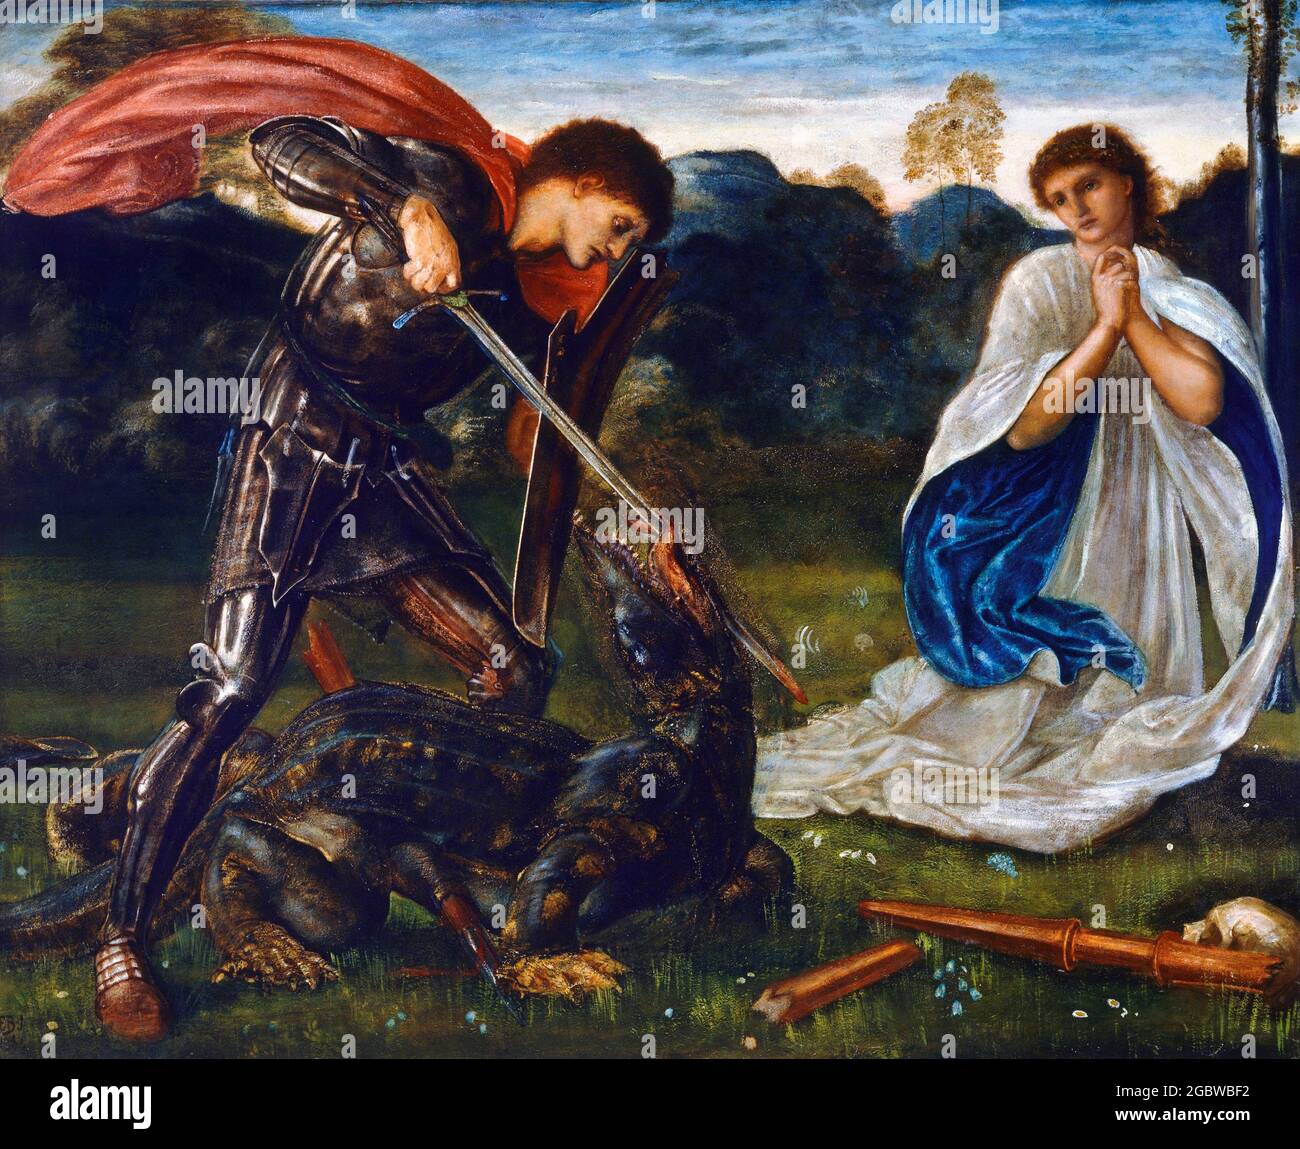 Der Kampf: St. George tötet den Drachen VI von Edward Burne-Jones (1833-1898), Öl auf Leinwand, 1866 Stockfoto